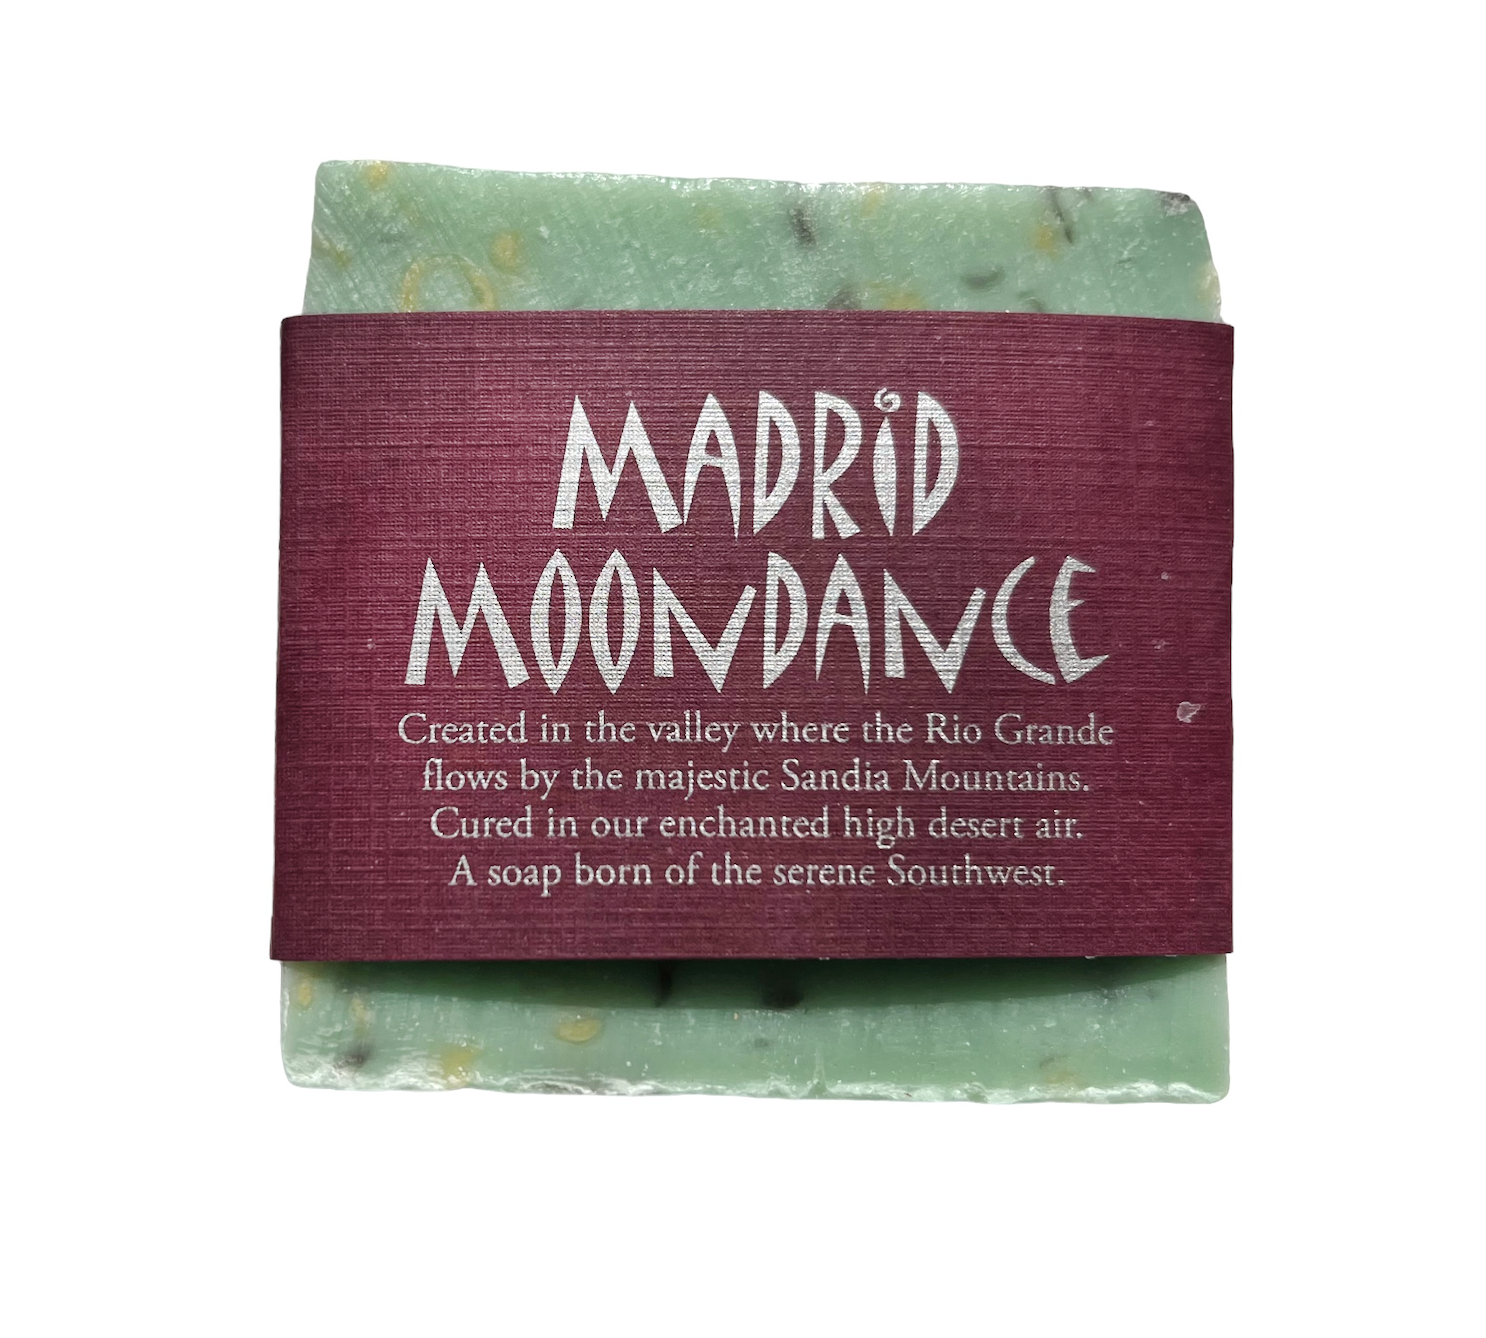 Madrid Moondance soap by Sandia Soap Company